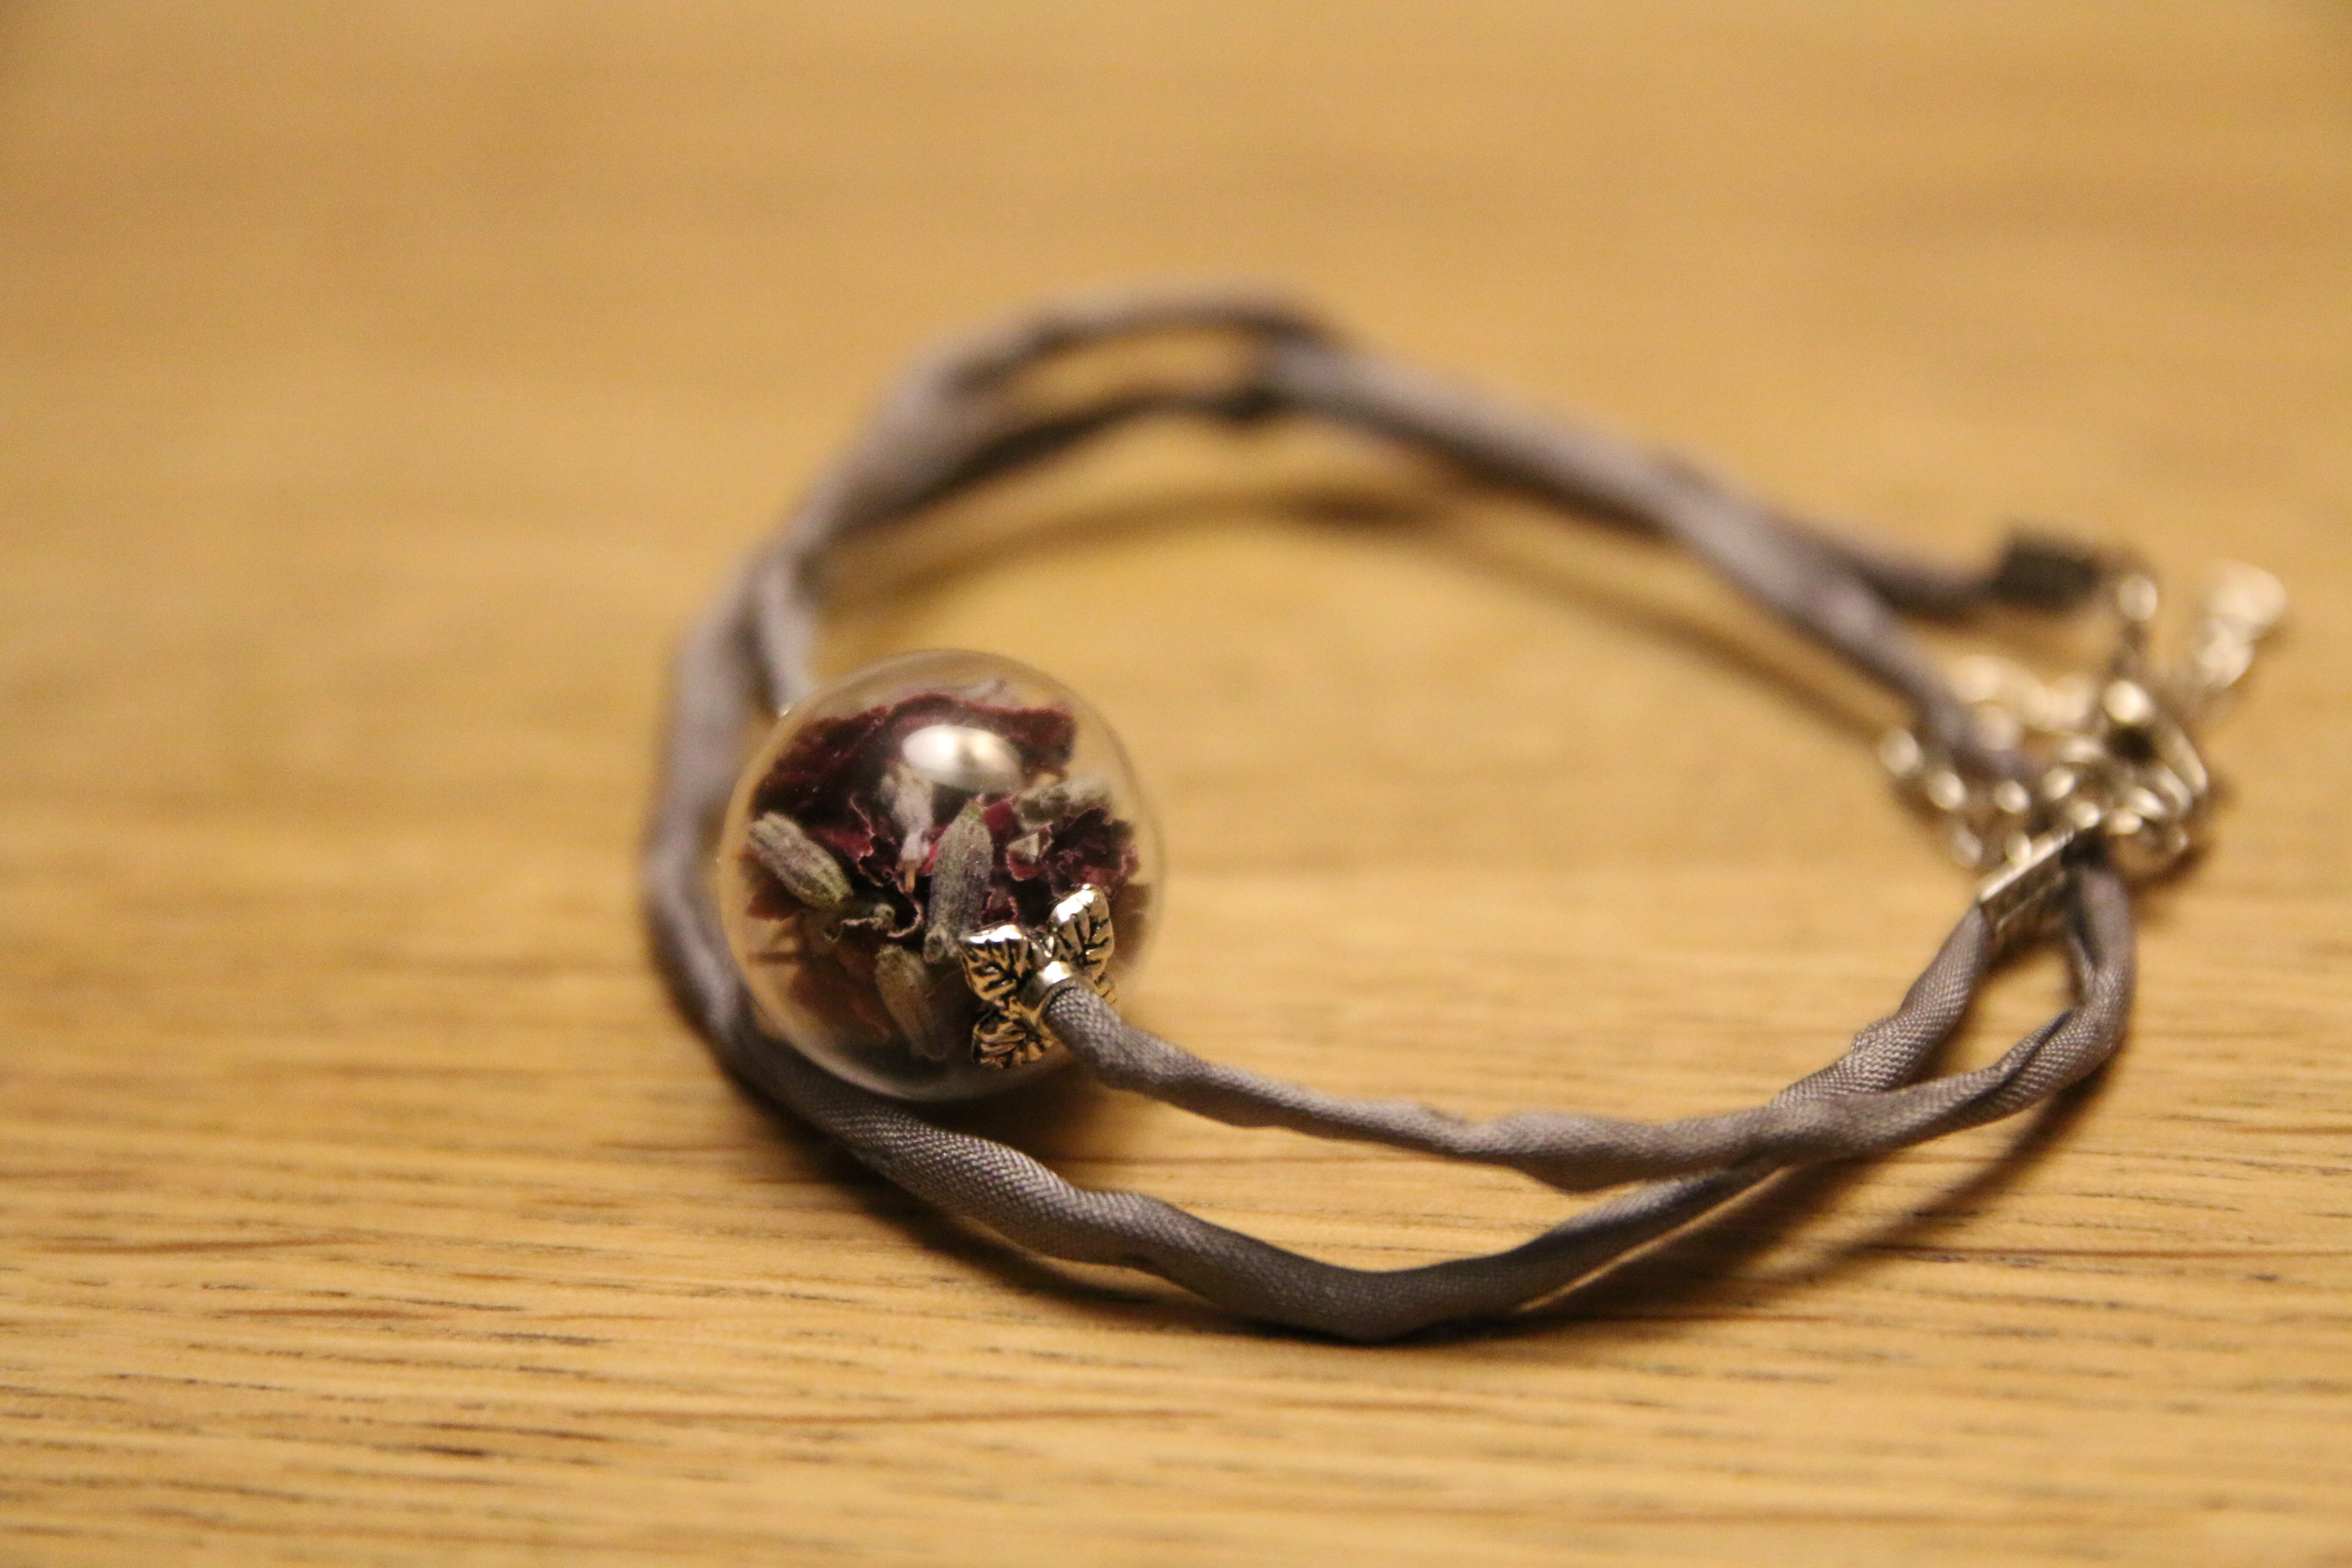 Armband aus Seide mit Glaskugel (Rose, Lavendel)